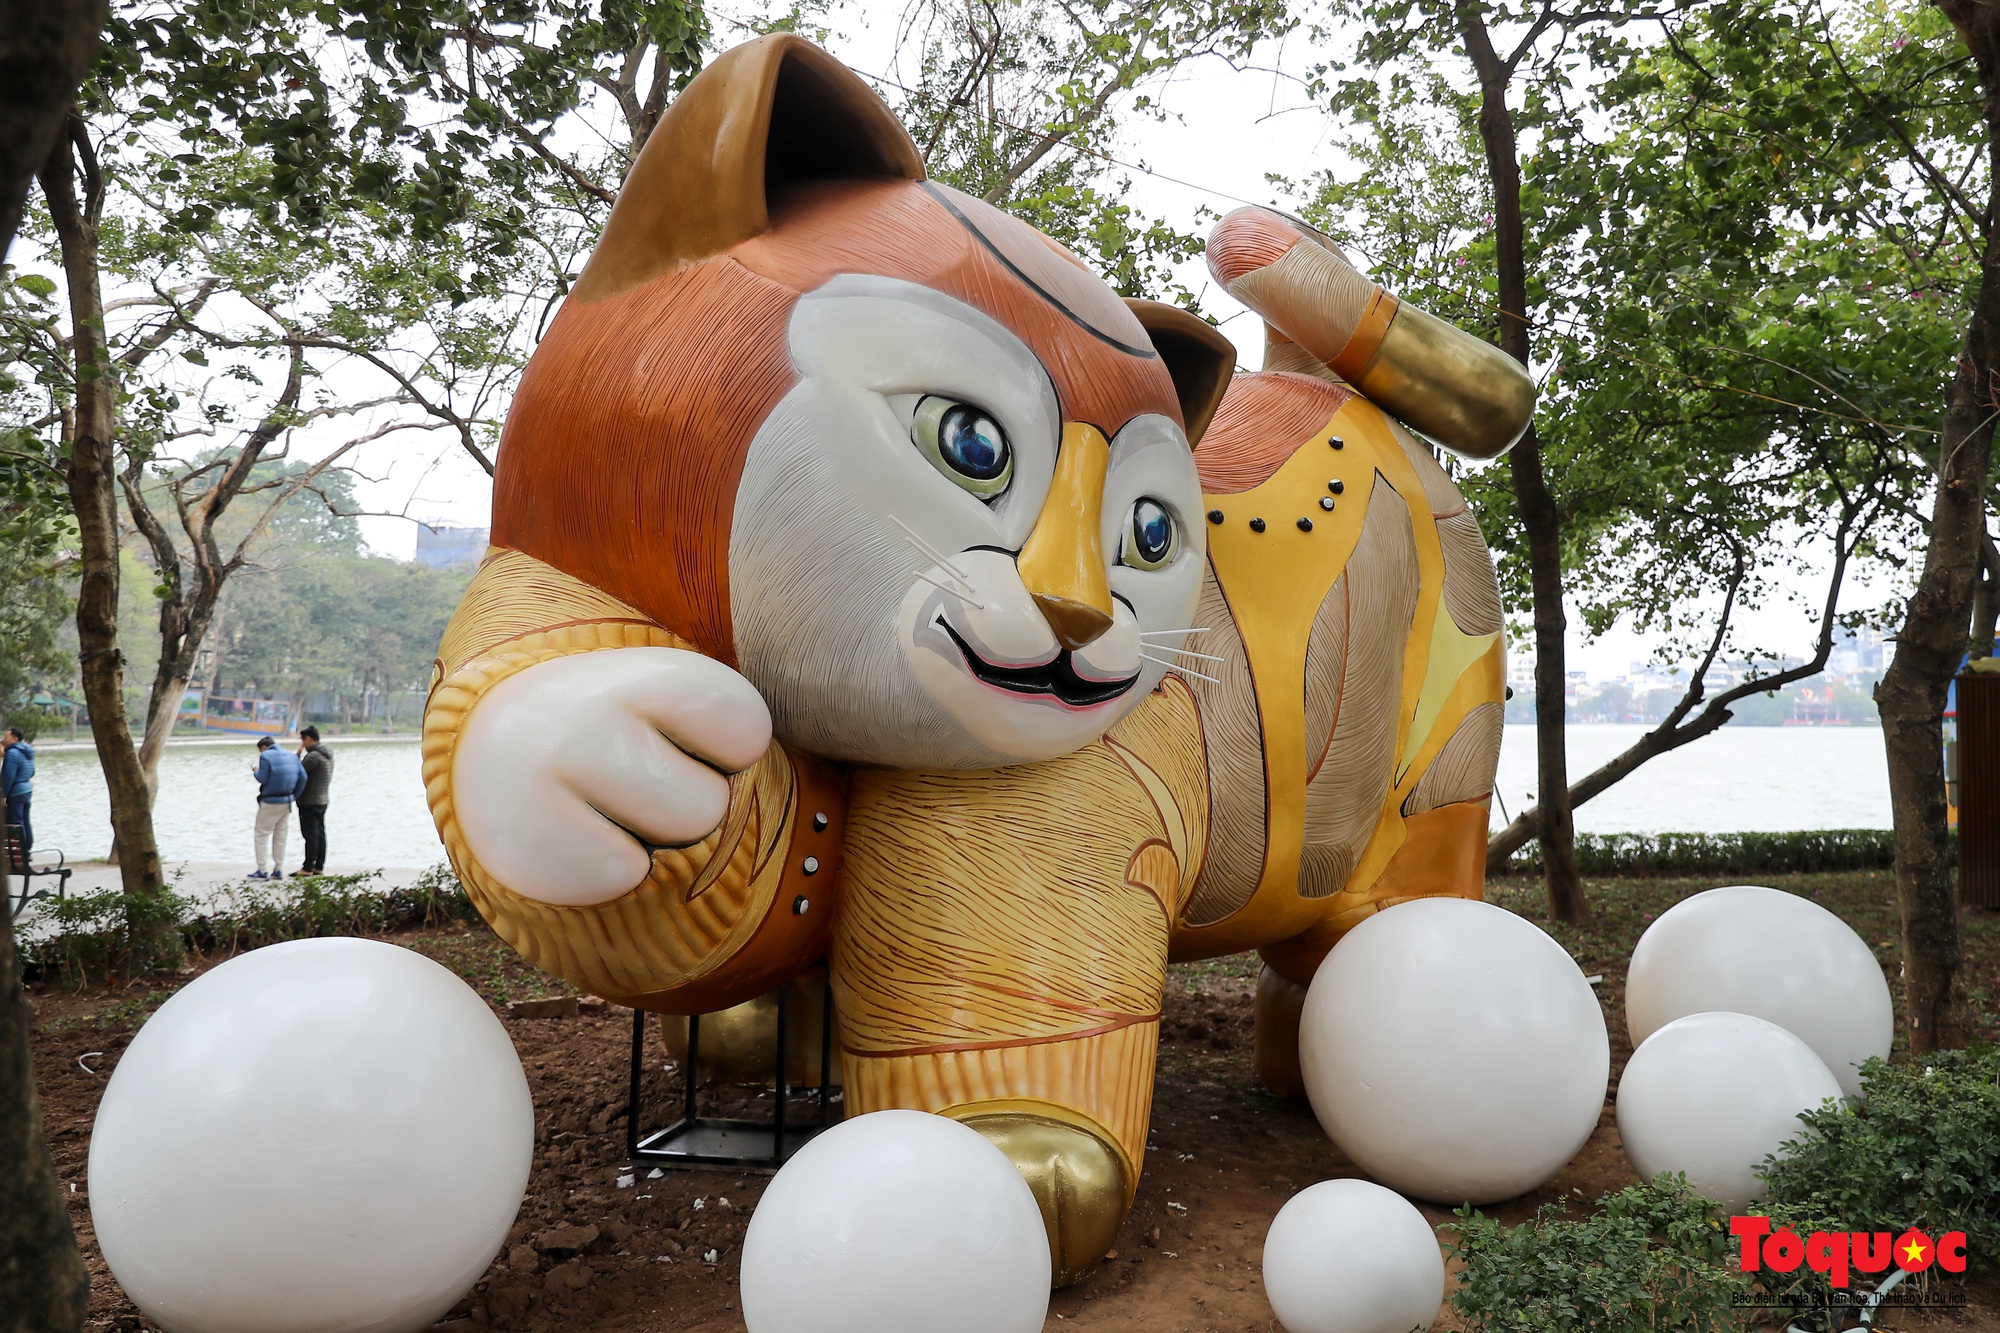 Hà Nội: Linh vật mèo ngộ nghĩnh ở hồ Gươm thu hút nhiều người xem - Ảnh 3.